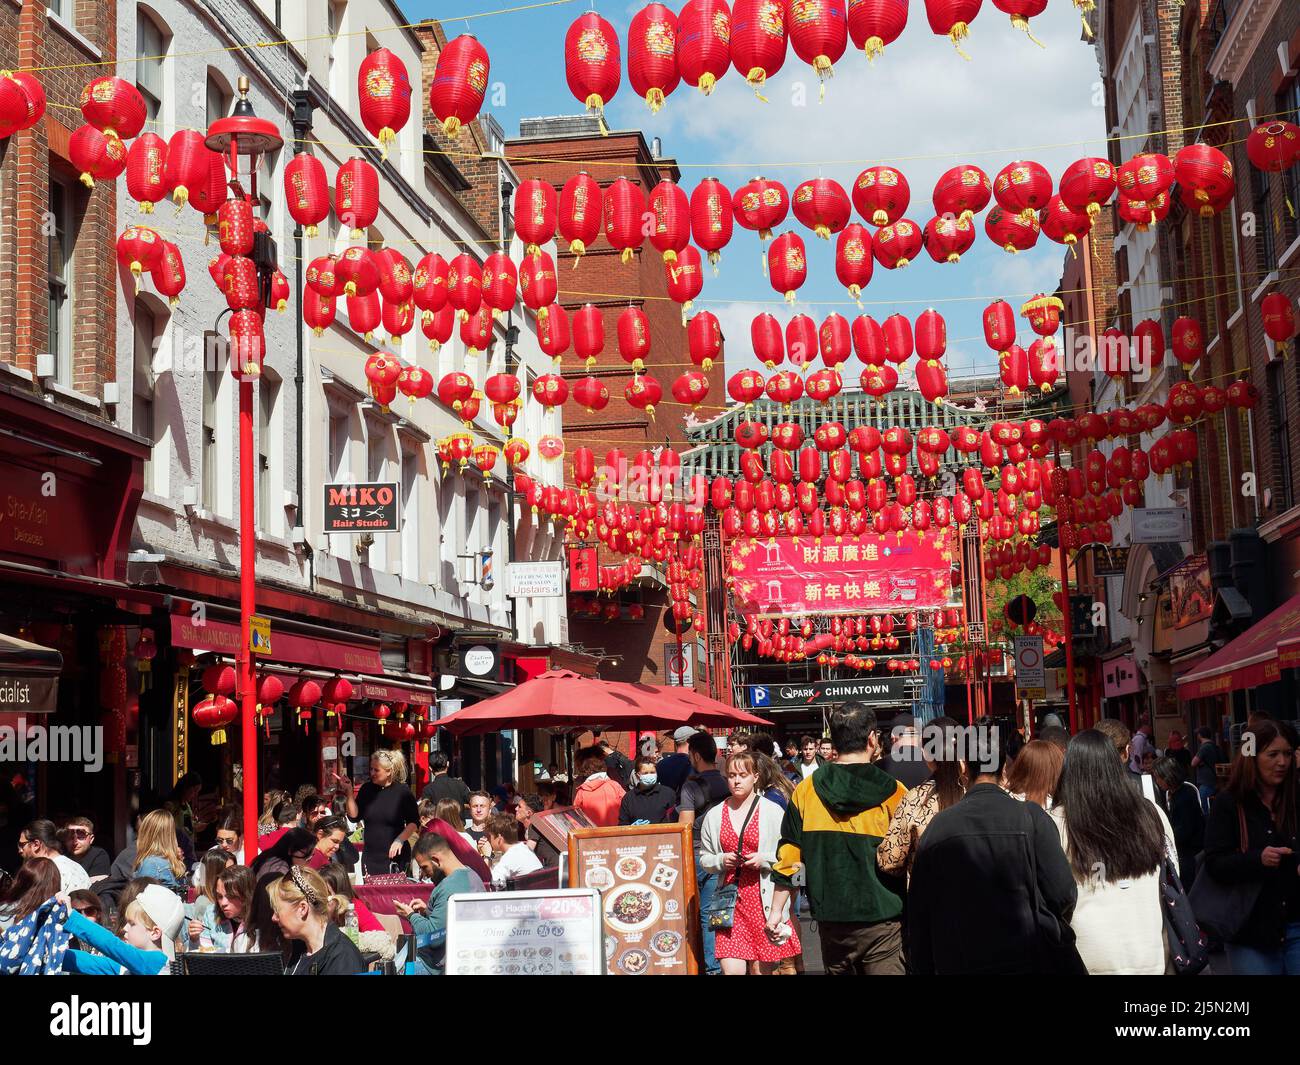 Vue sur Gerrard Street dans le quartier chinois de Londres, décoré de lanternes rouges suspendues Banque D'Images